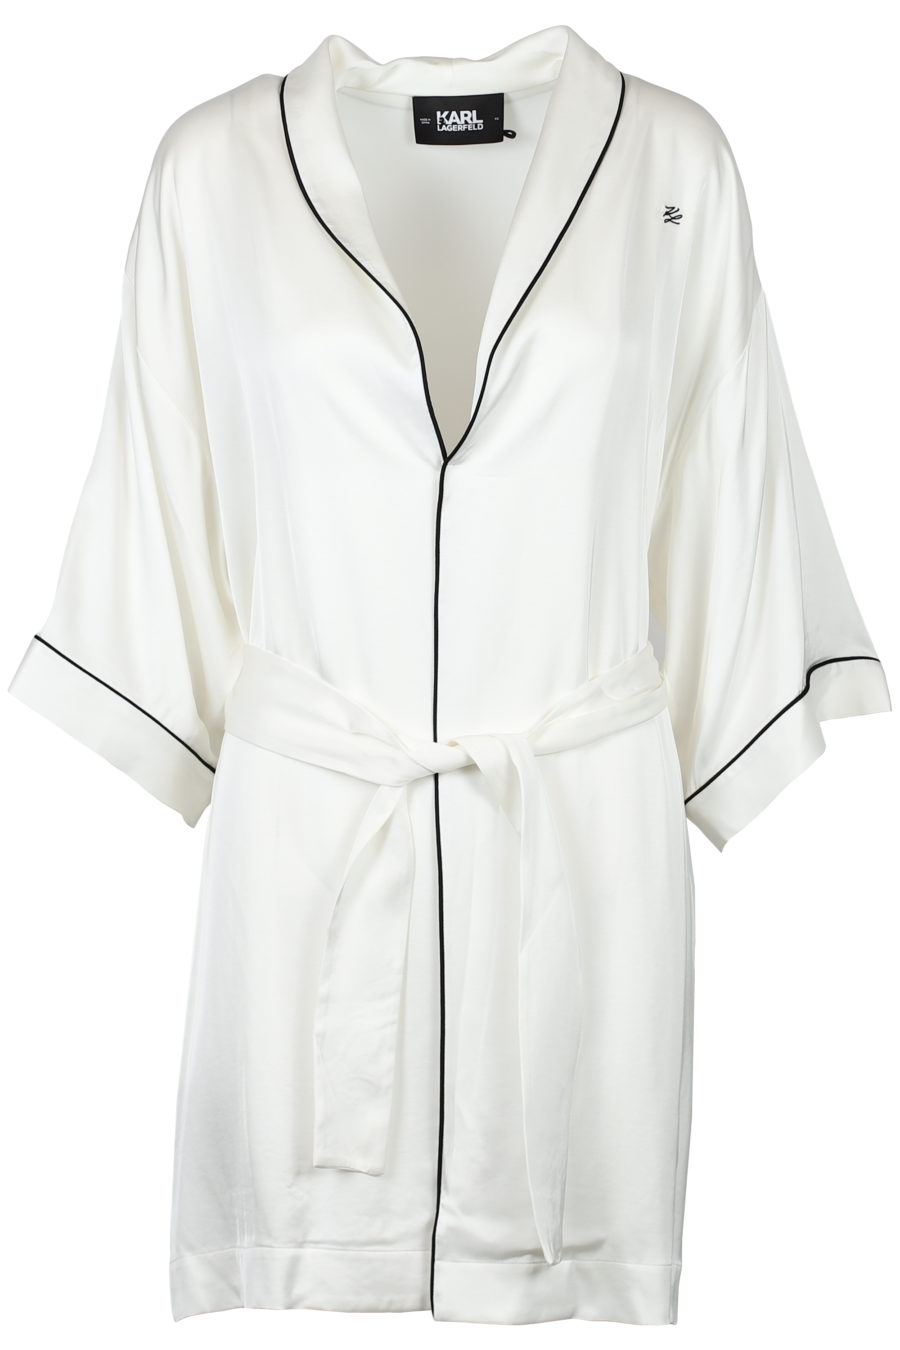 Weißer Kimono aus Satin - IMG 2118